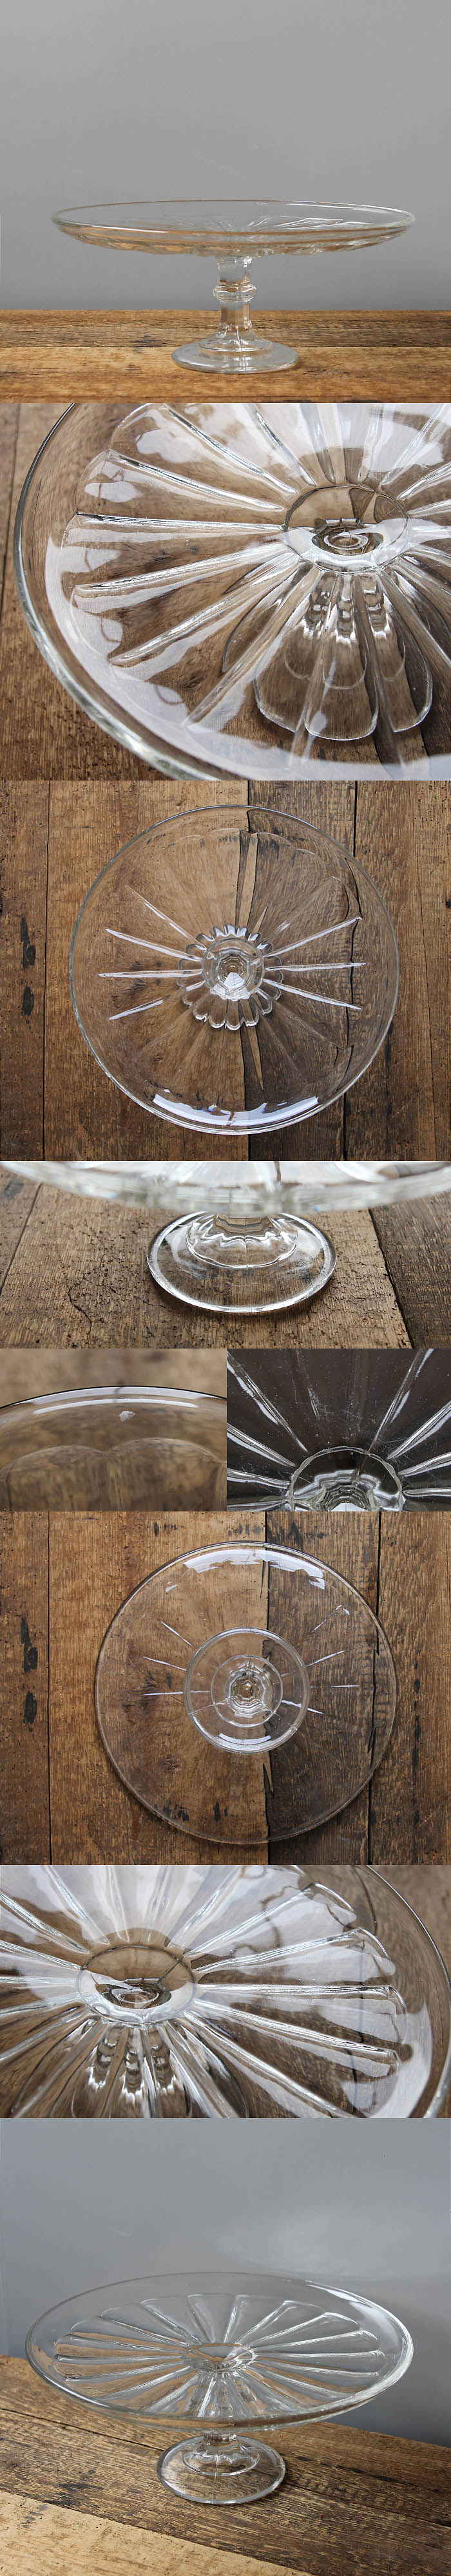 イギリス アンティーク ガラスケーキスタンド コンポート皿 食器 インテリア雑貨「プレスガラス」V-906